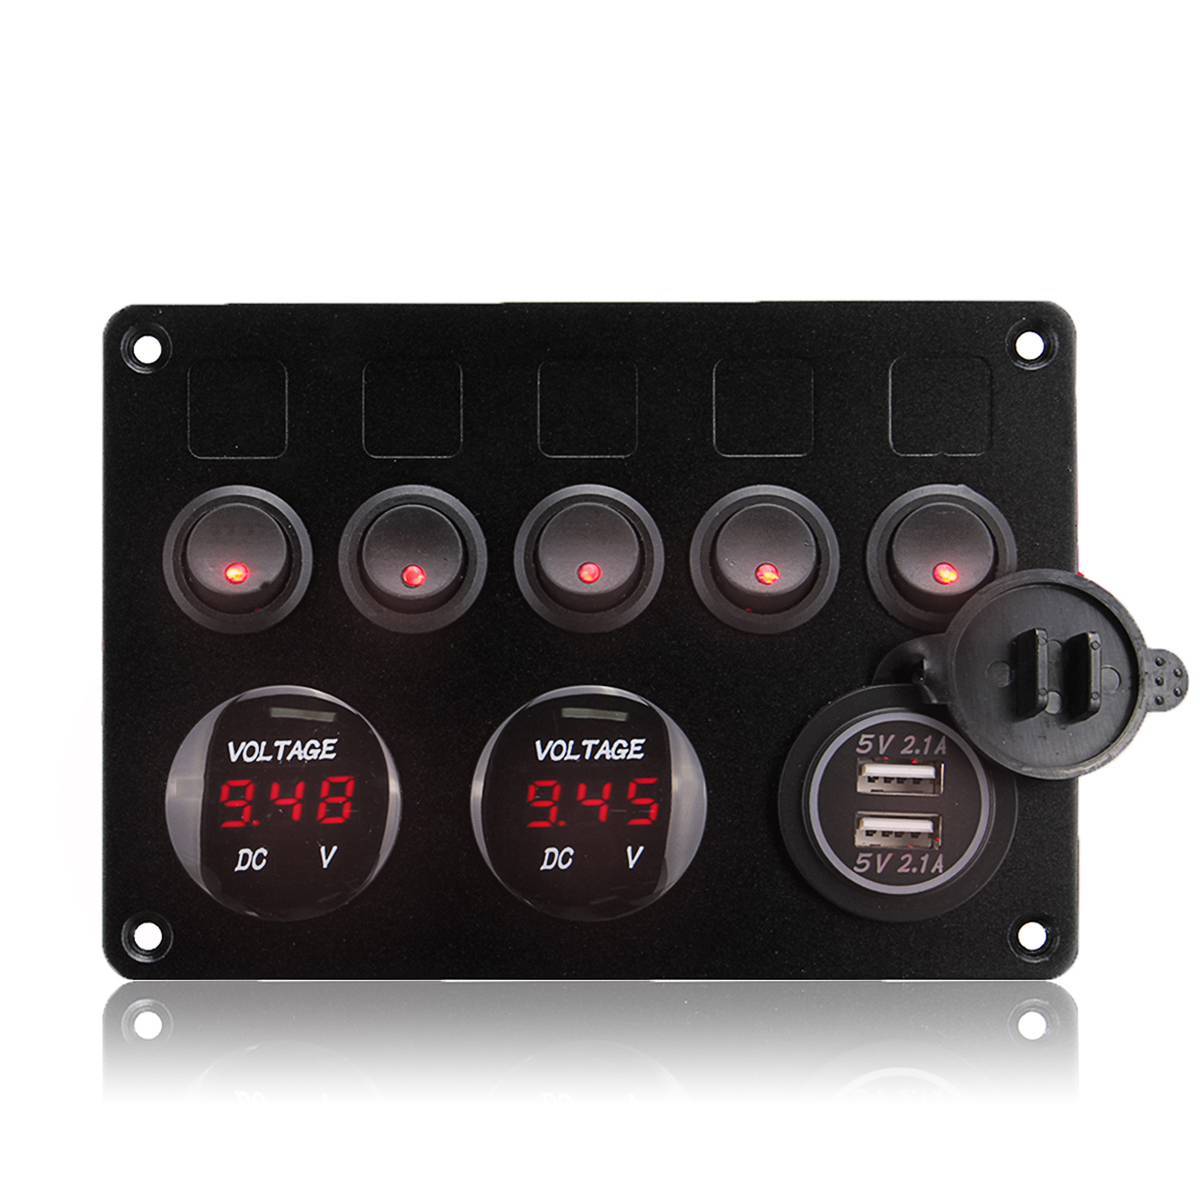 FANMURAN 5 Gang Switch Control Panel LED Rocker 12V//24V Car Boat Marine 2 USB /& Voltmeter